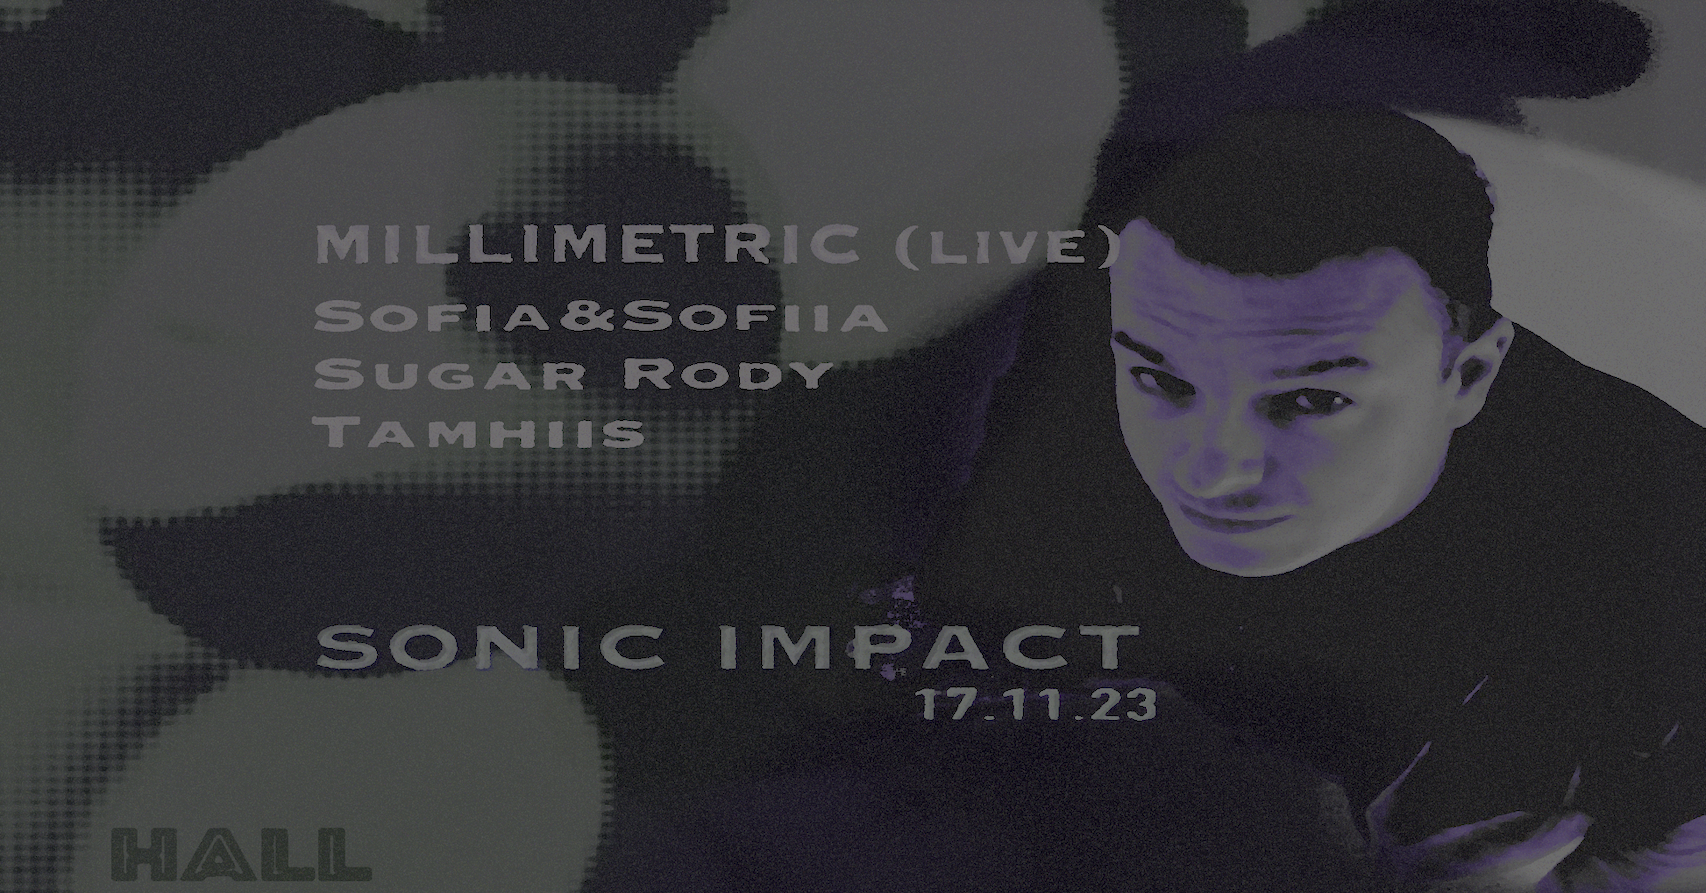 SONIC IMPACT: Millimetric FX (live) - フライヤー表